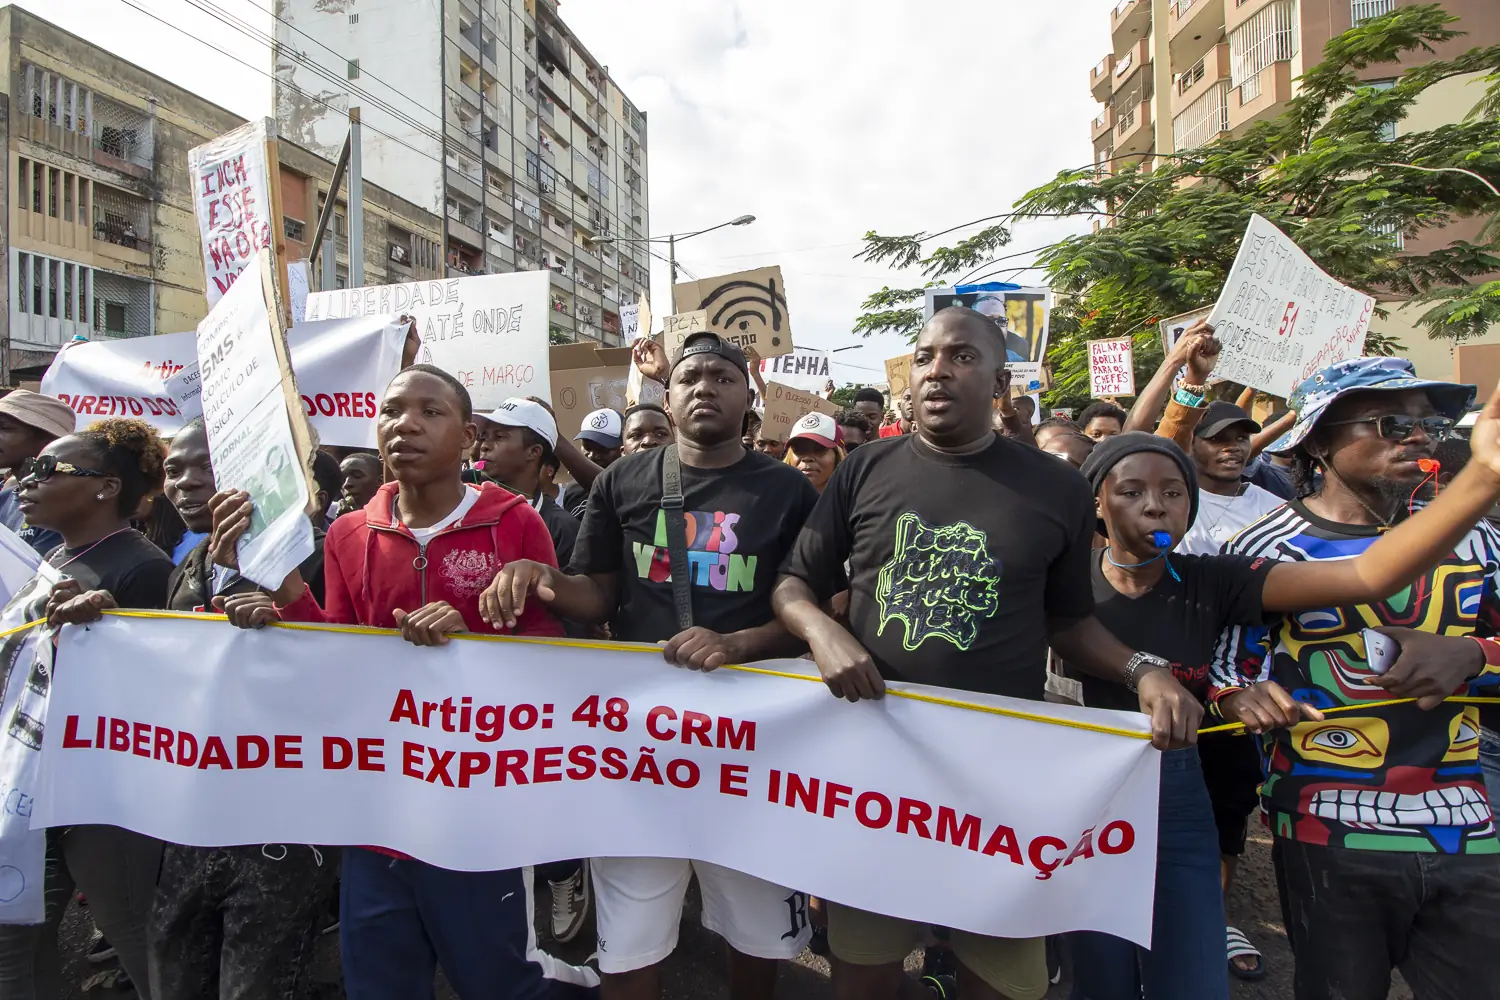 Manifestantes, incuindo Puto Aires, carregando um banner que invoga o Artigo 48 da Constituição da República que invoca a Libertdade de Expressão e Informação